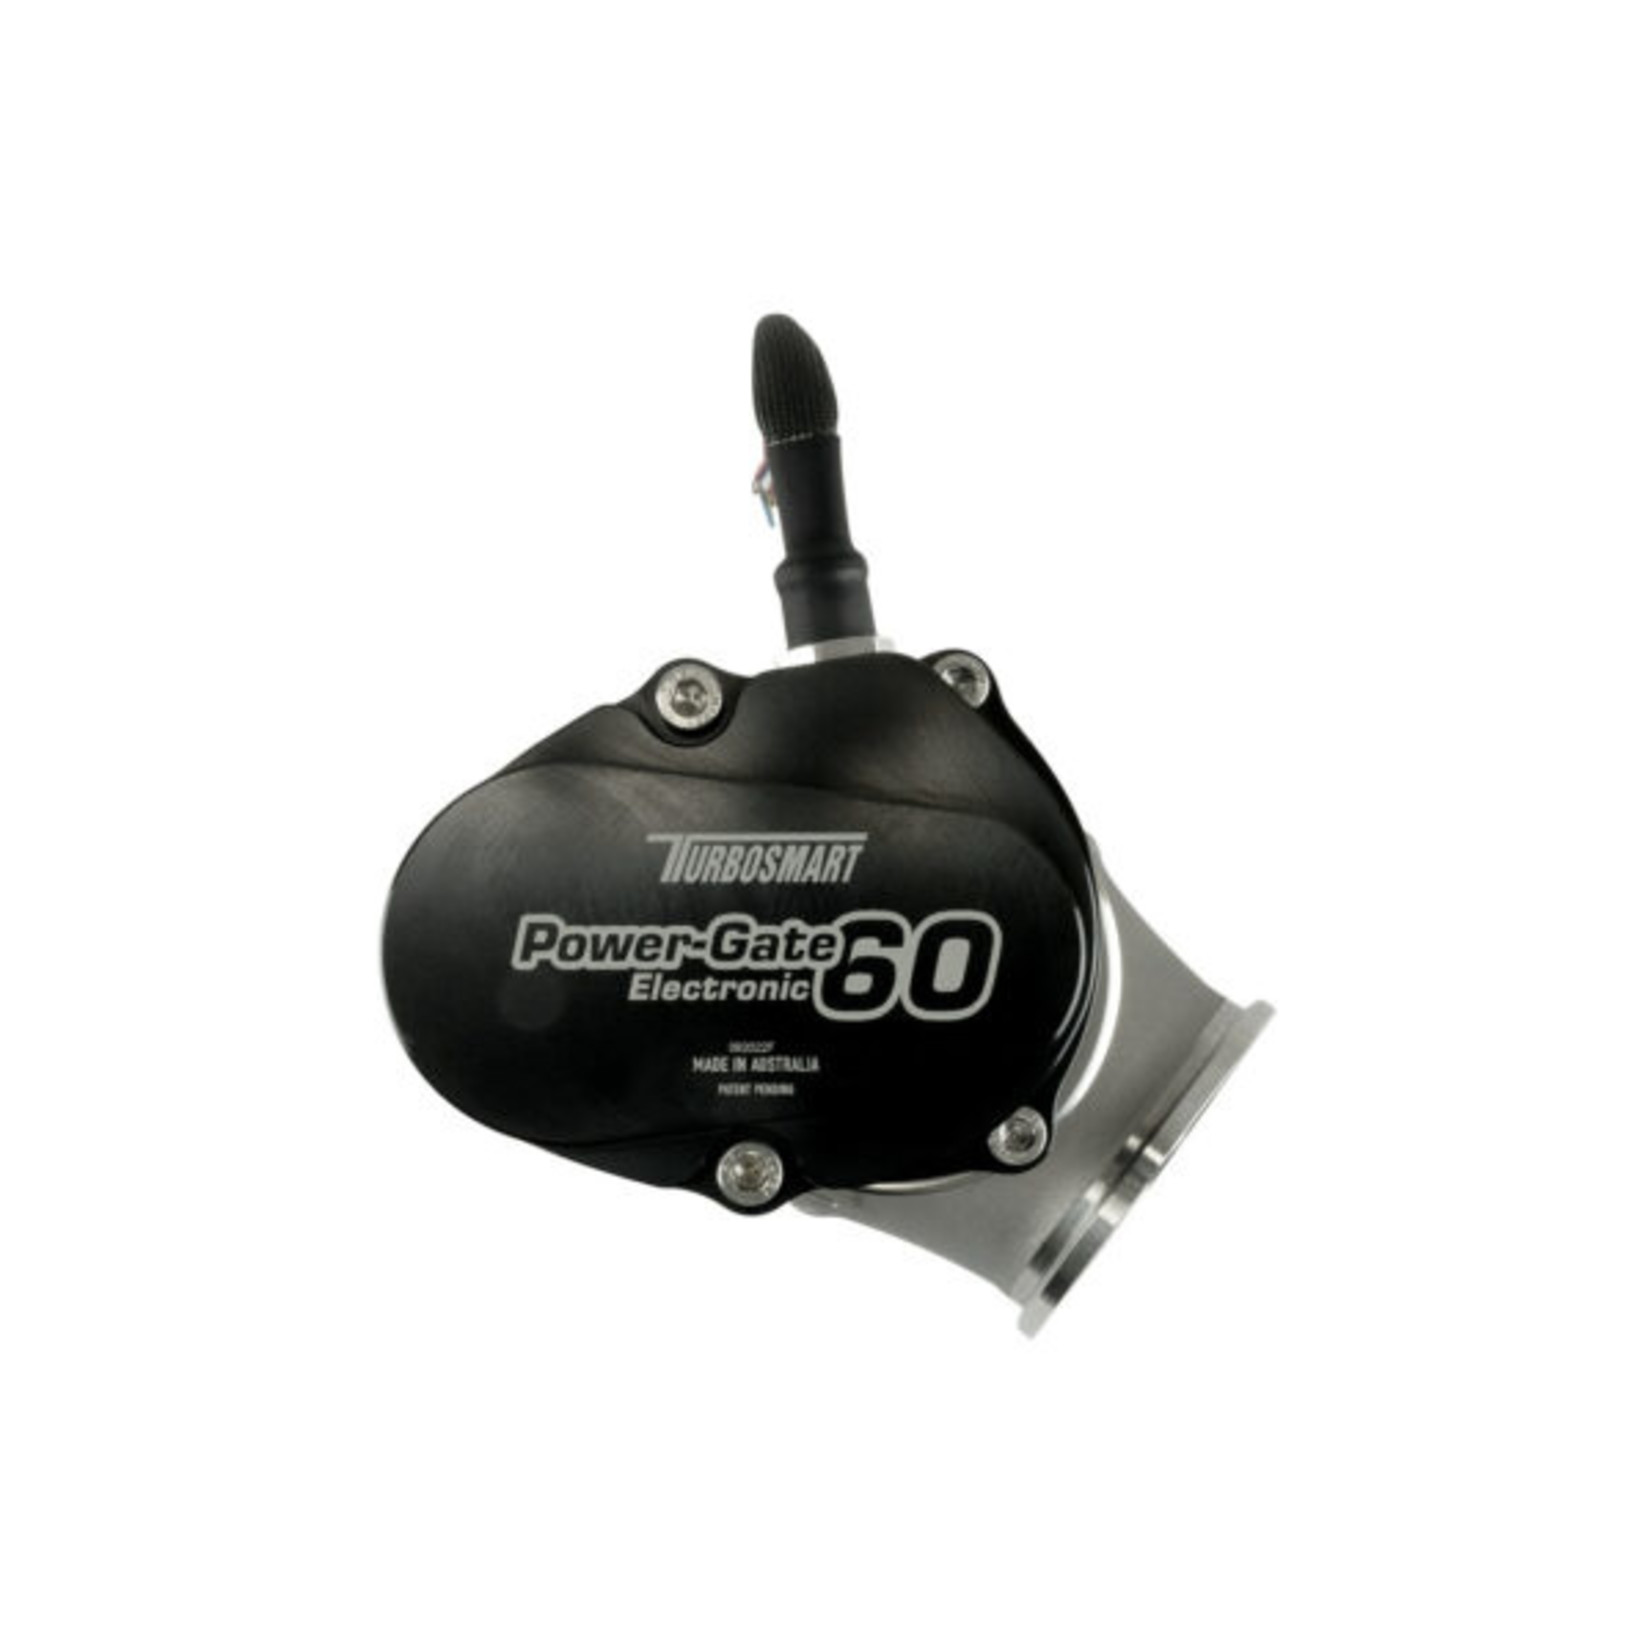 Turbosmart GenV eWG60 Powergate 60 Diameter: 60mm